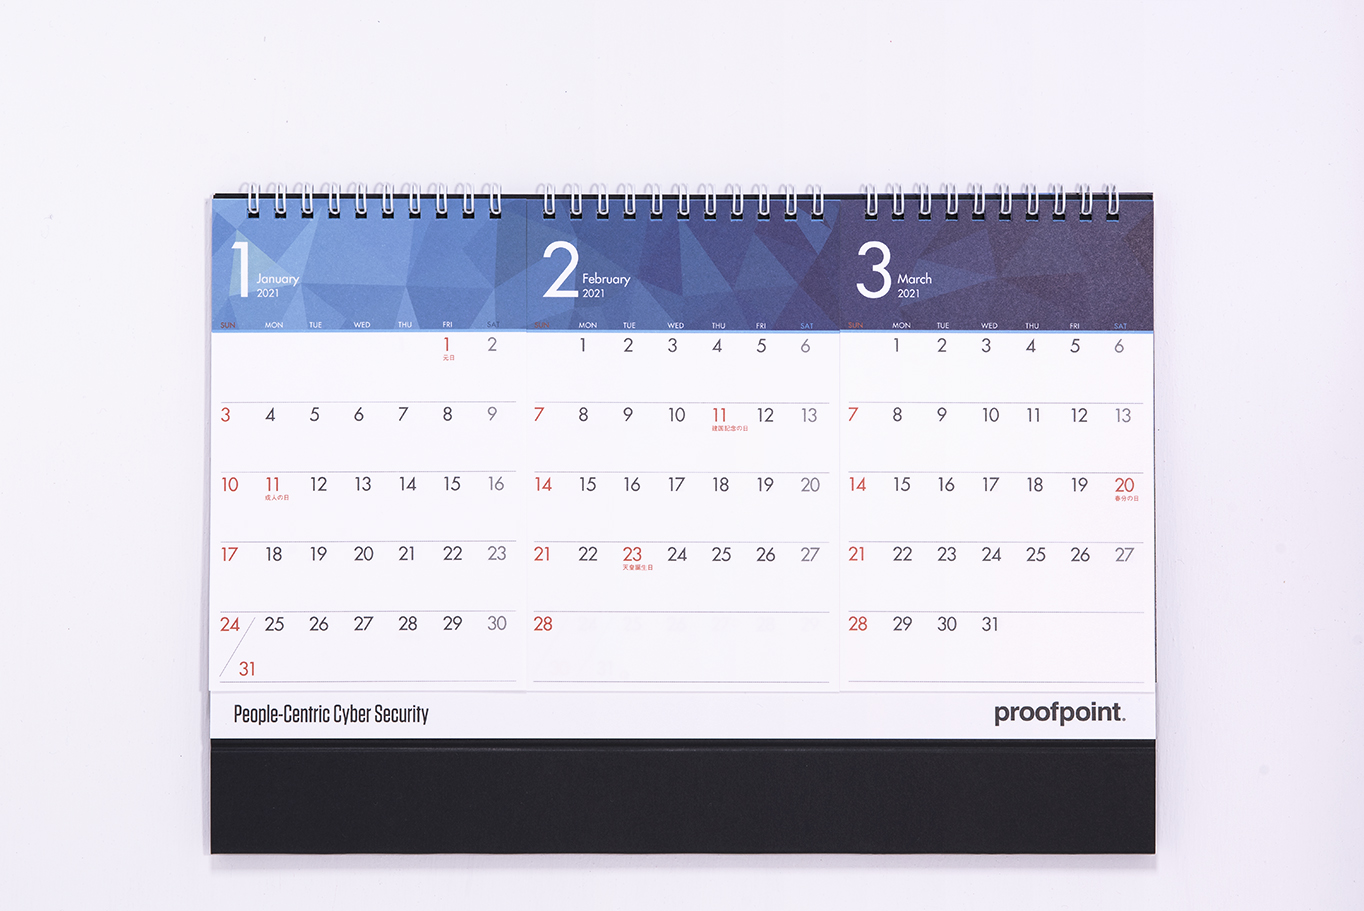 Proofpoint様の2021年卓上カレンダーは大きなA4サイズのセパレートタイプ